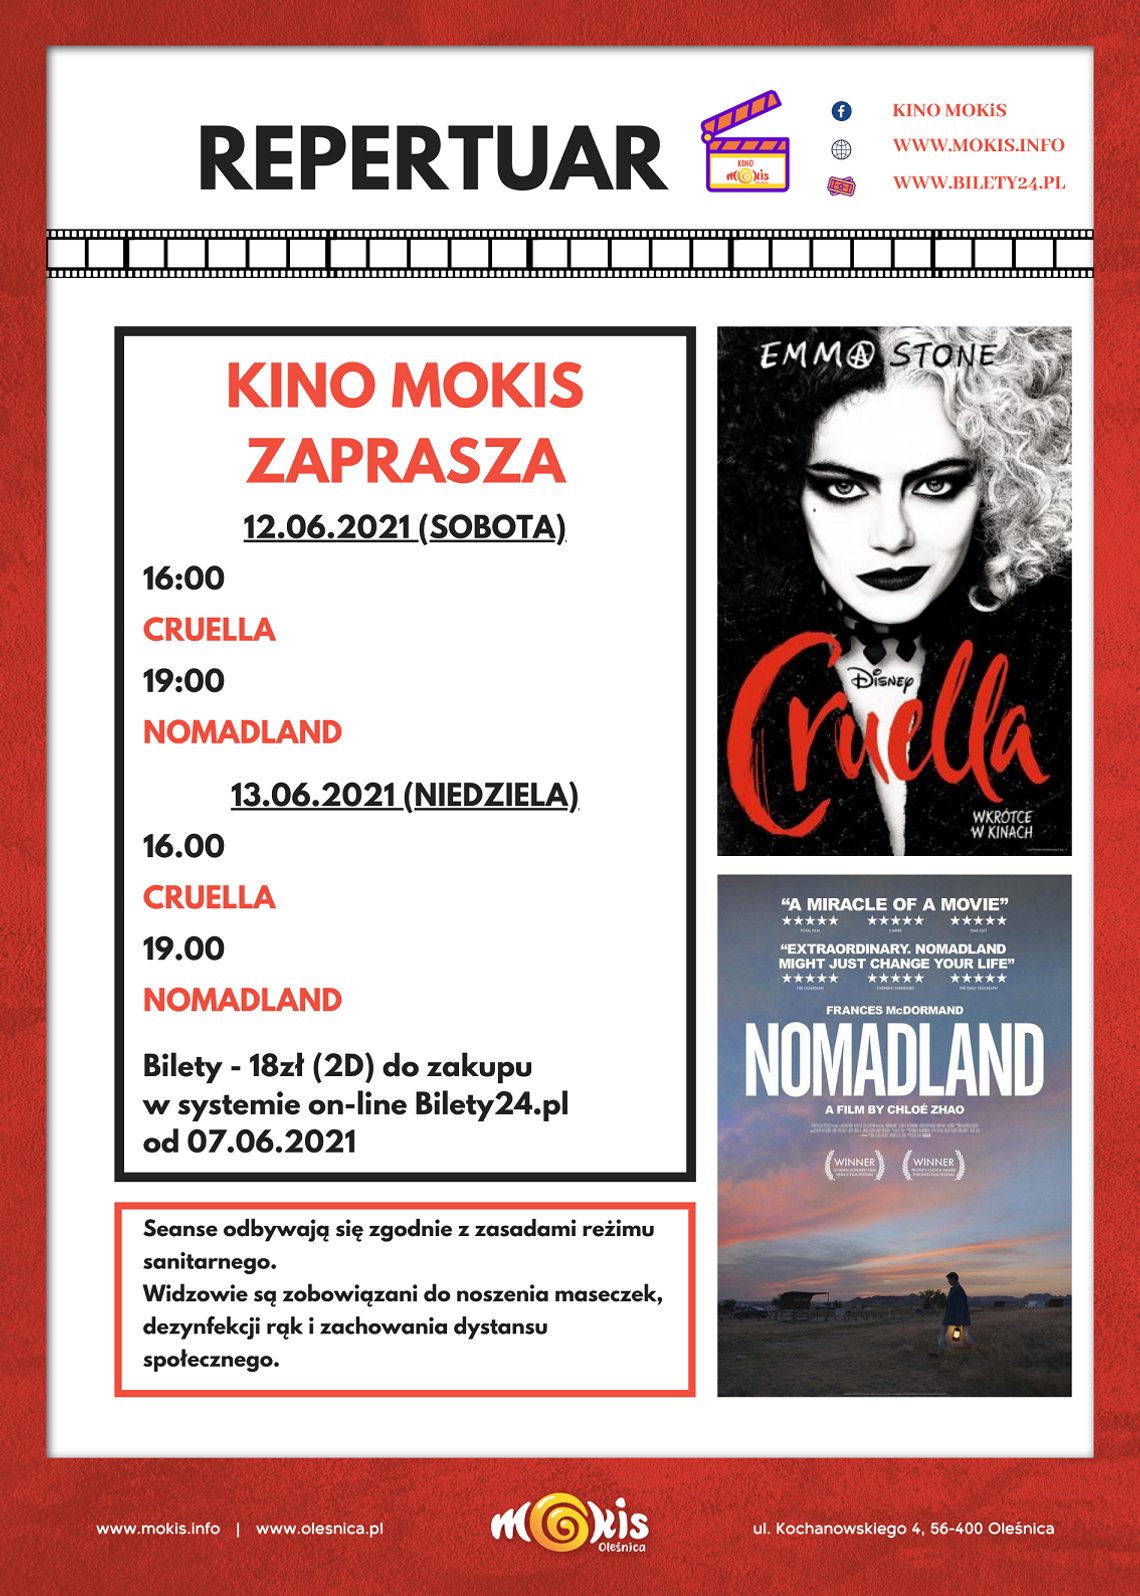 MOKiS zaprasza na weekend do kina na “Cruellę” I “Nomadland”